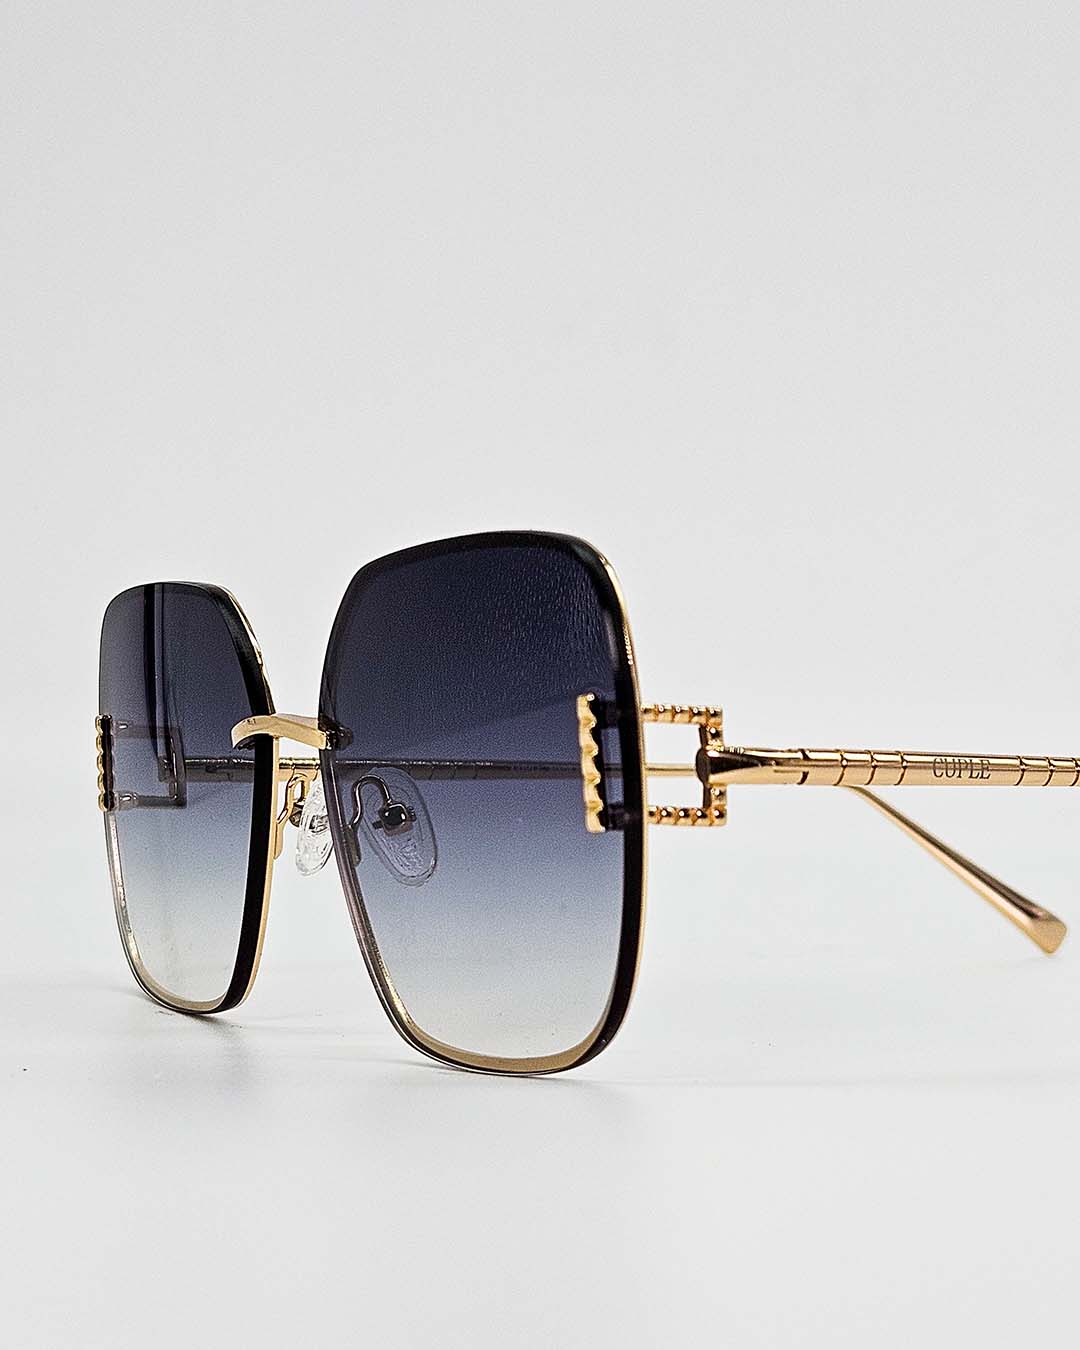 Cuple Square Golden Black Sunglasses – Cuple